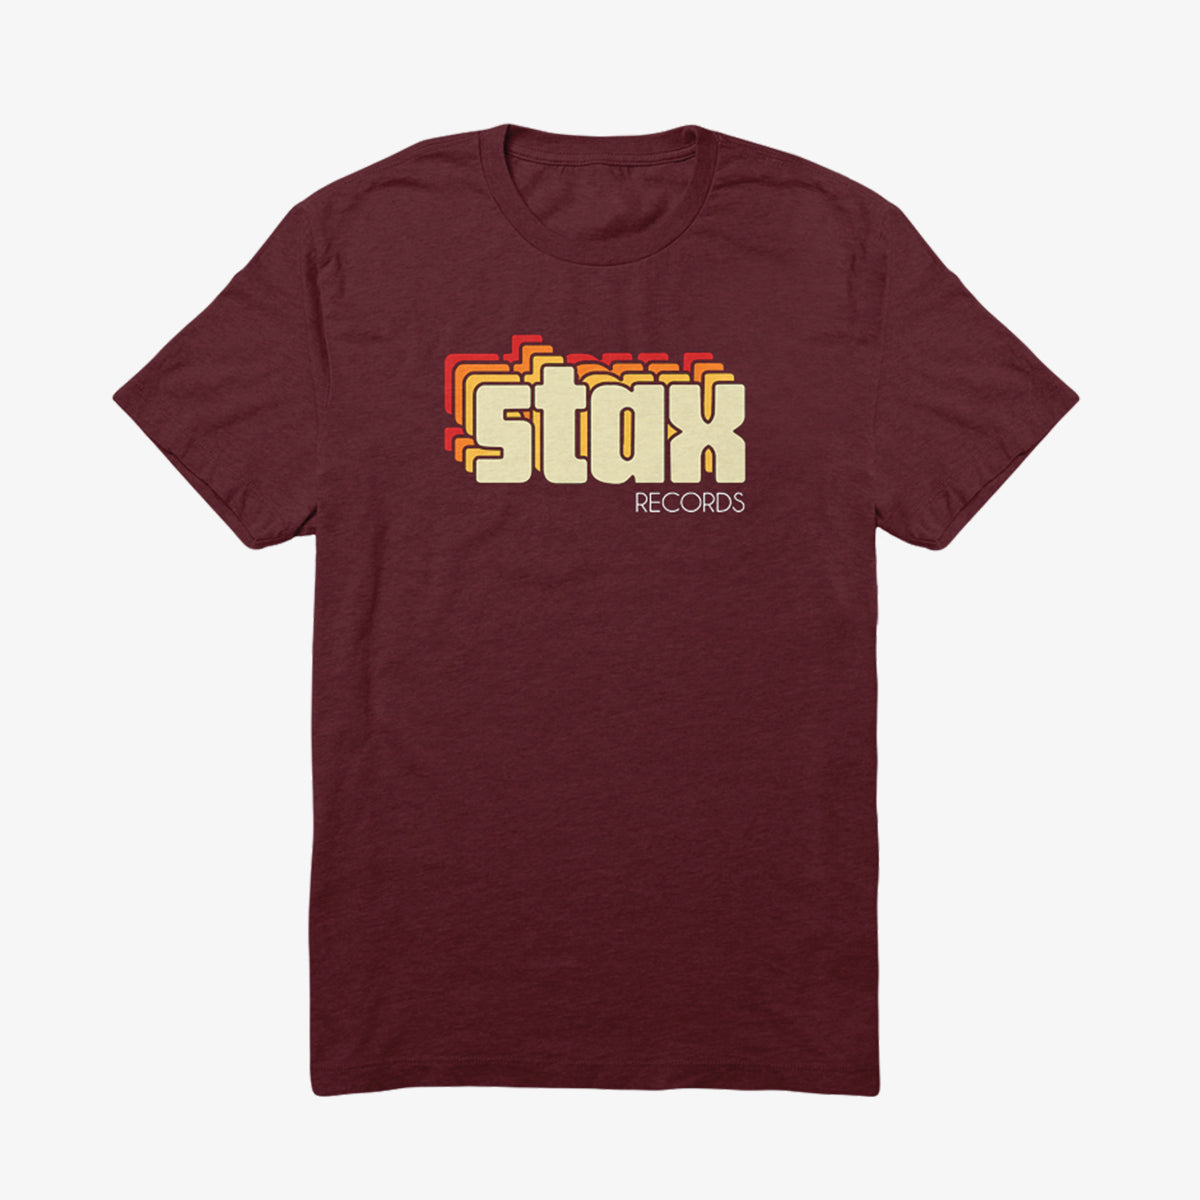 Stax Shirt